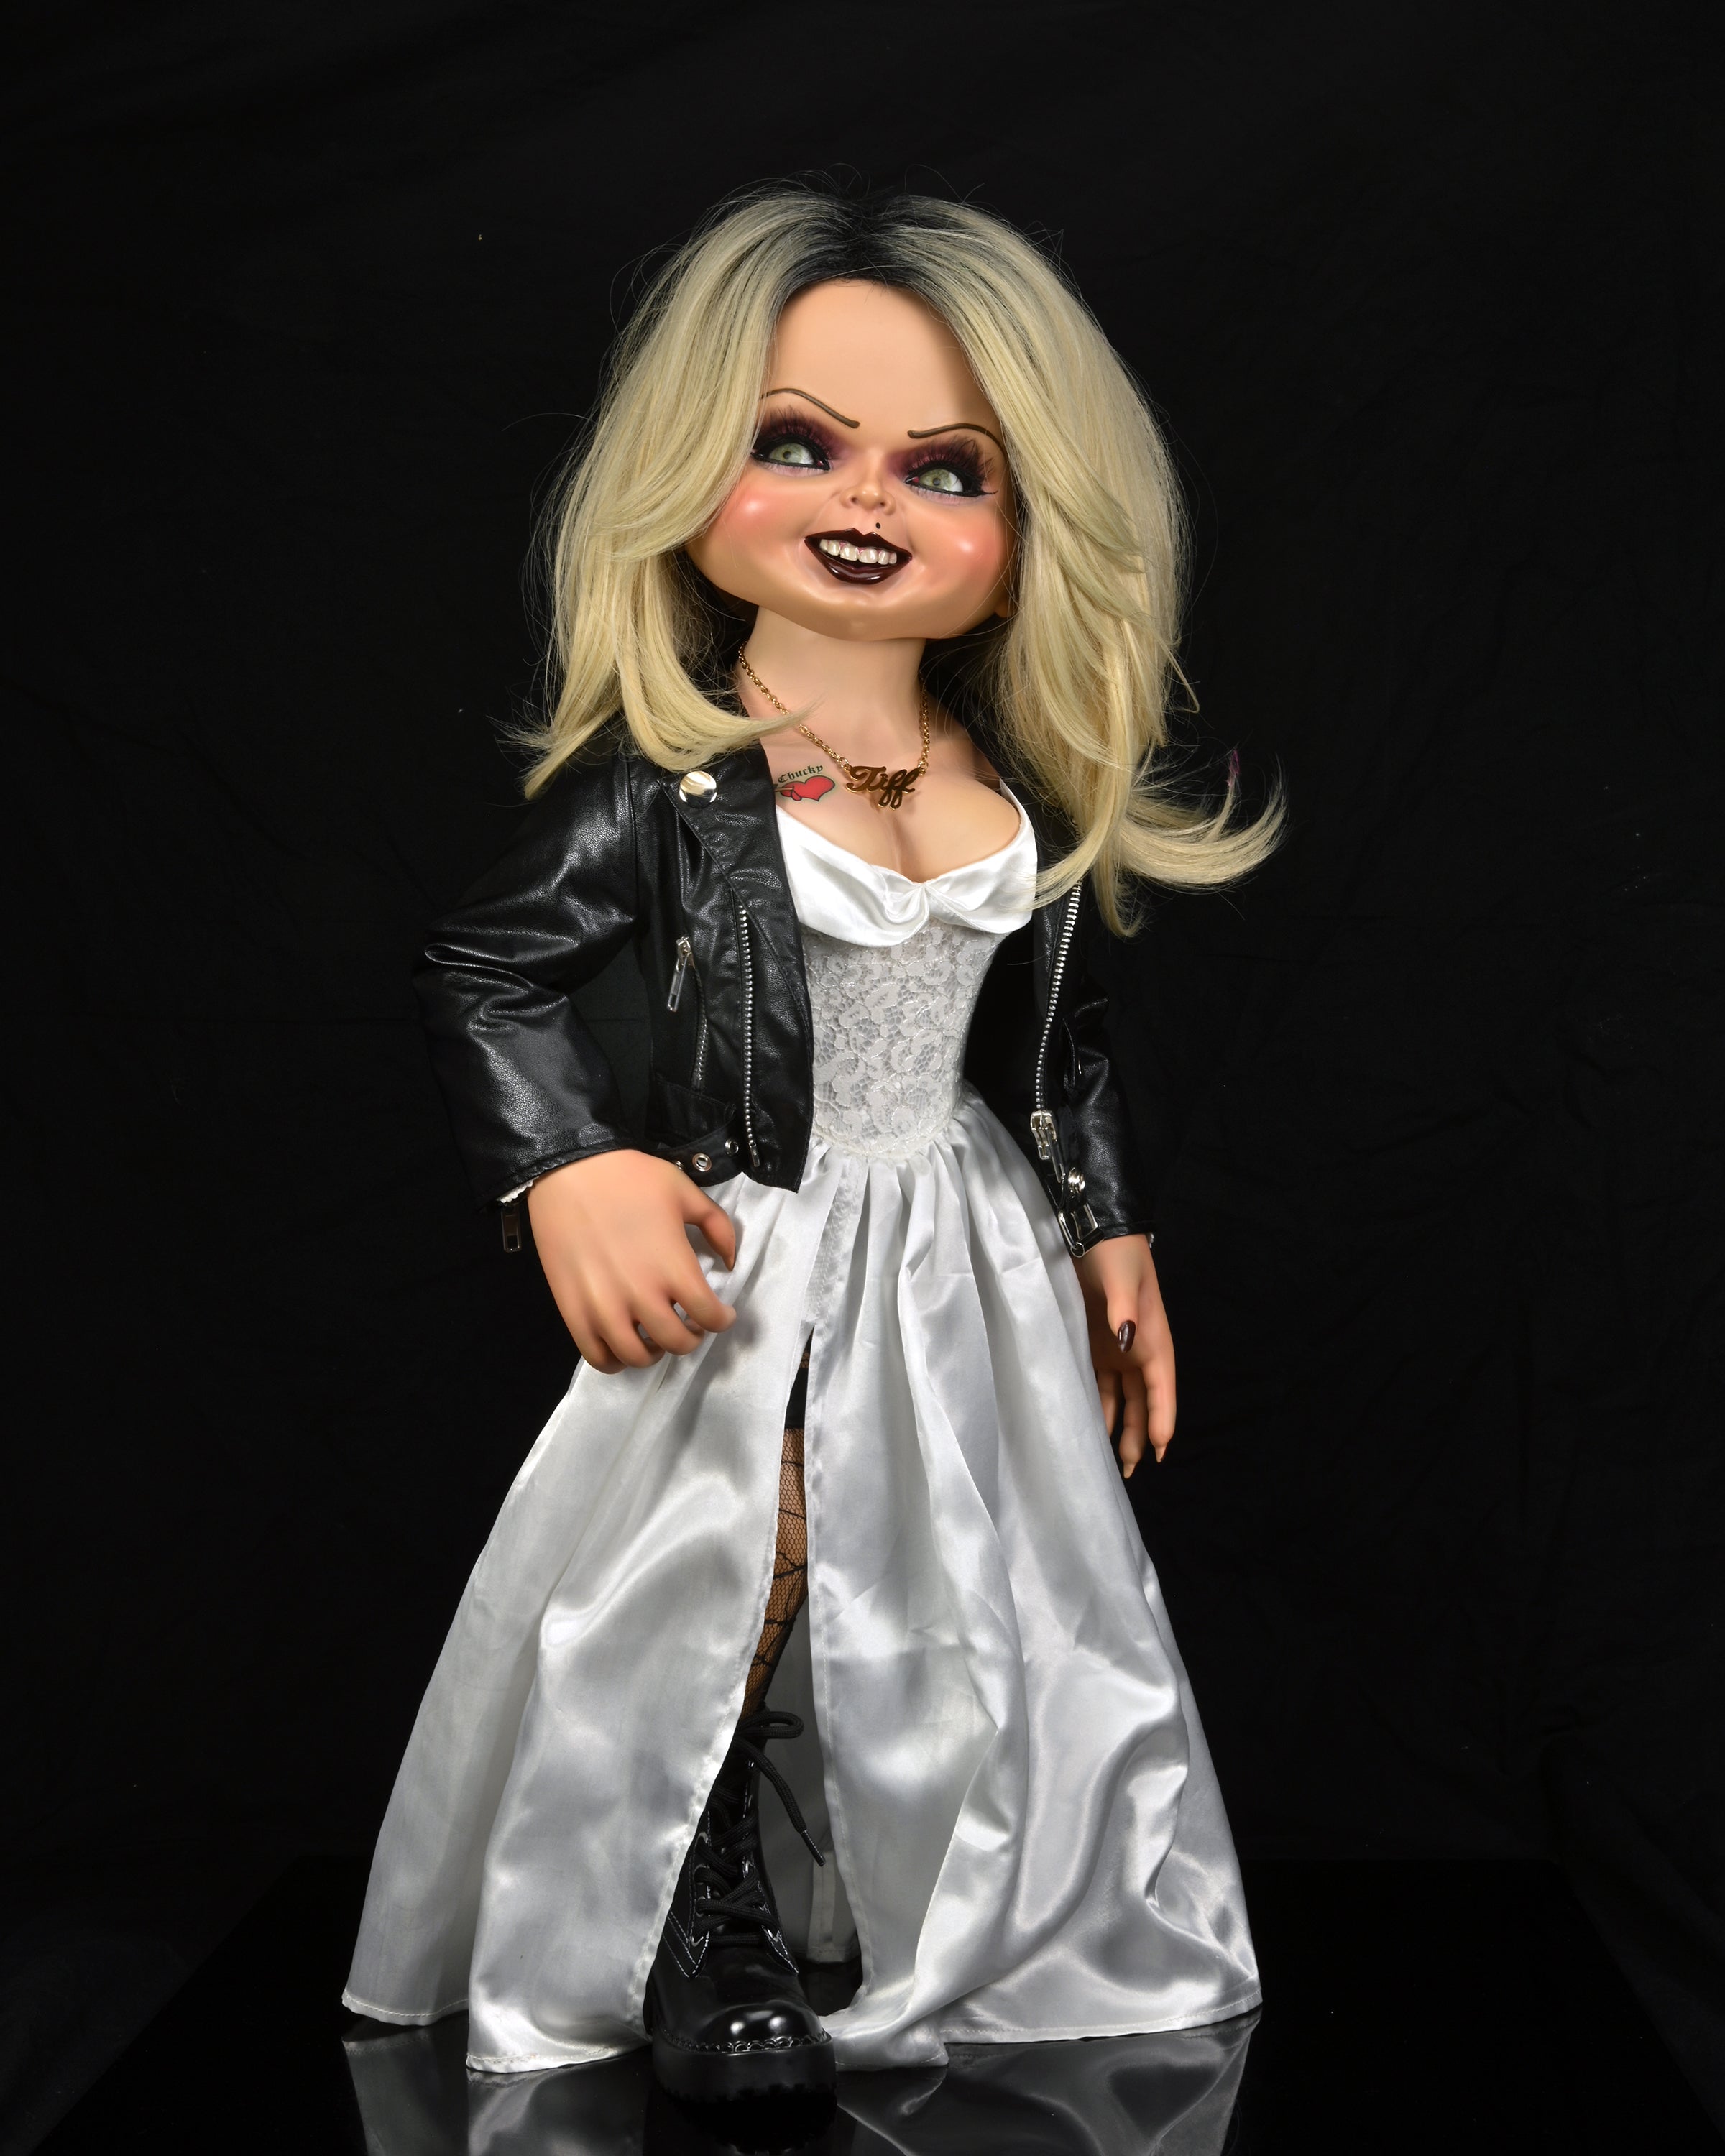 Bride Of Chucky - 1:1 Replica - Life-Size Tiffany – Neca